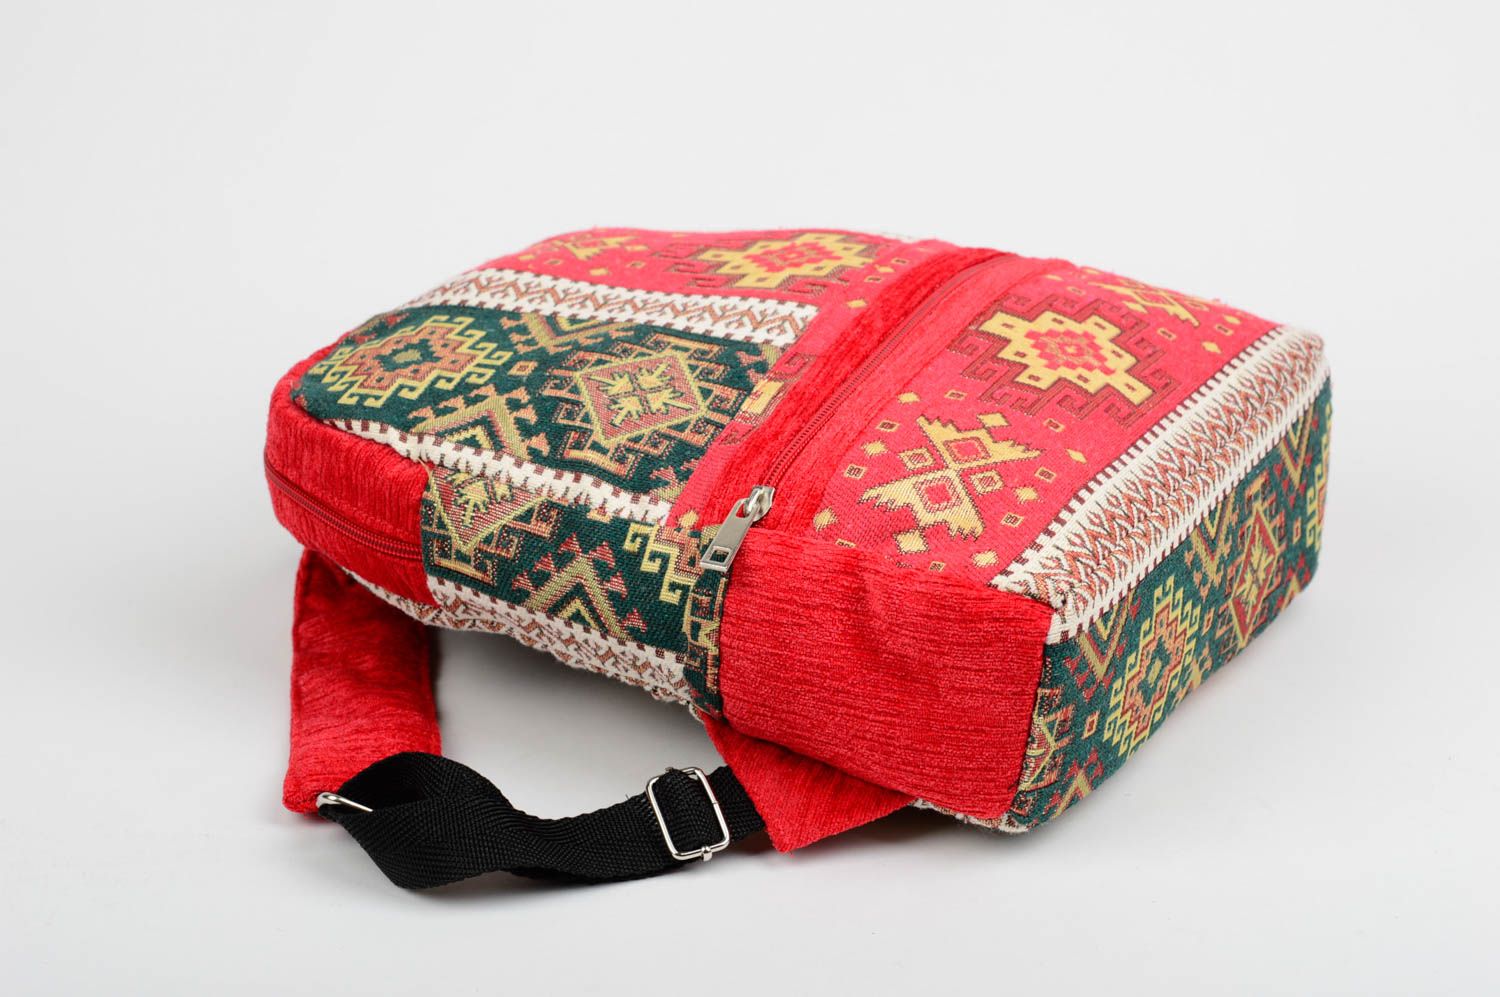 Travel bag beautiful bag cloth bag stylish bag unusual bag backpack for gir photo 3